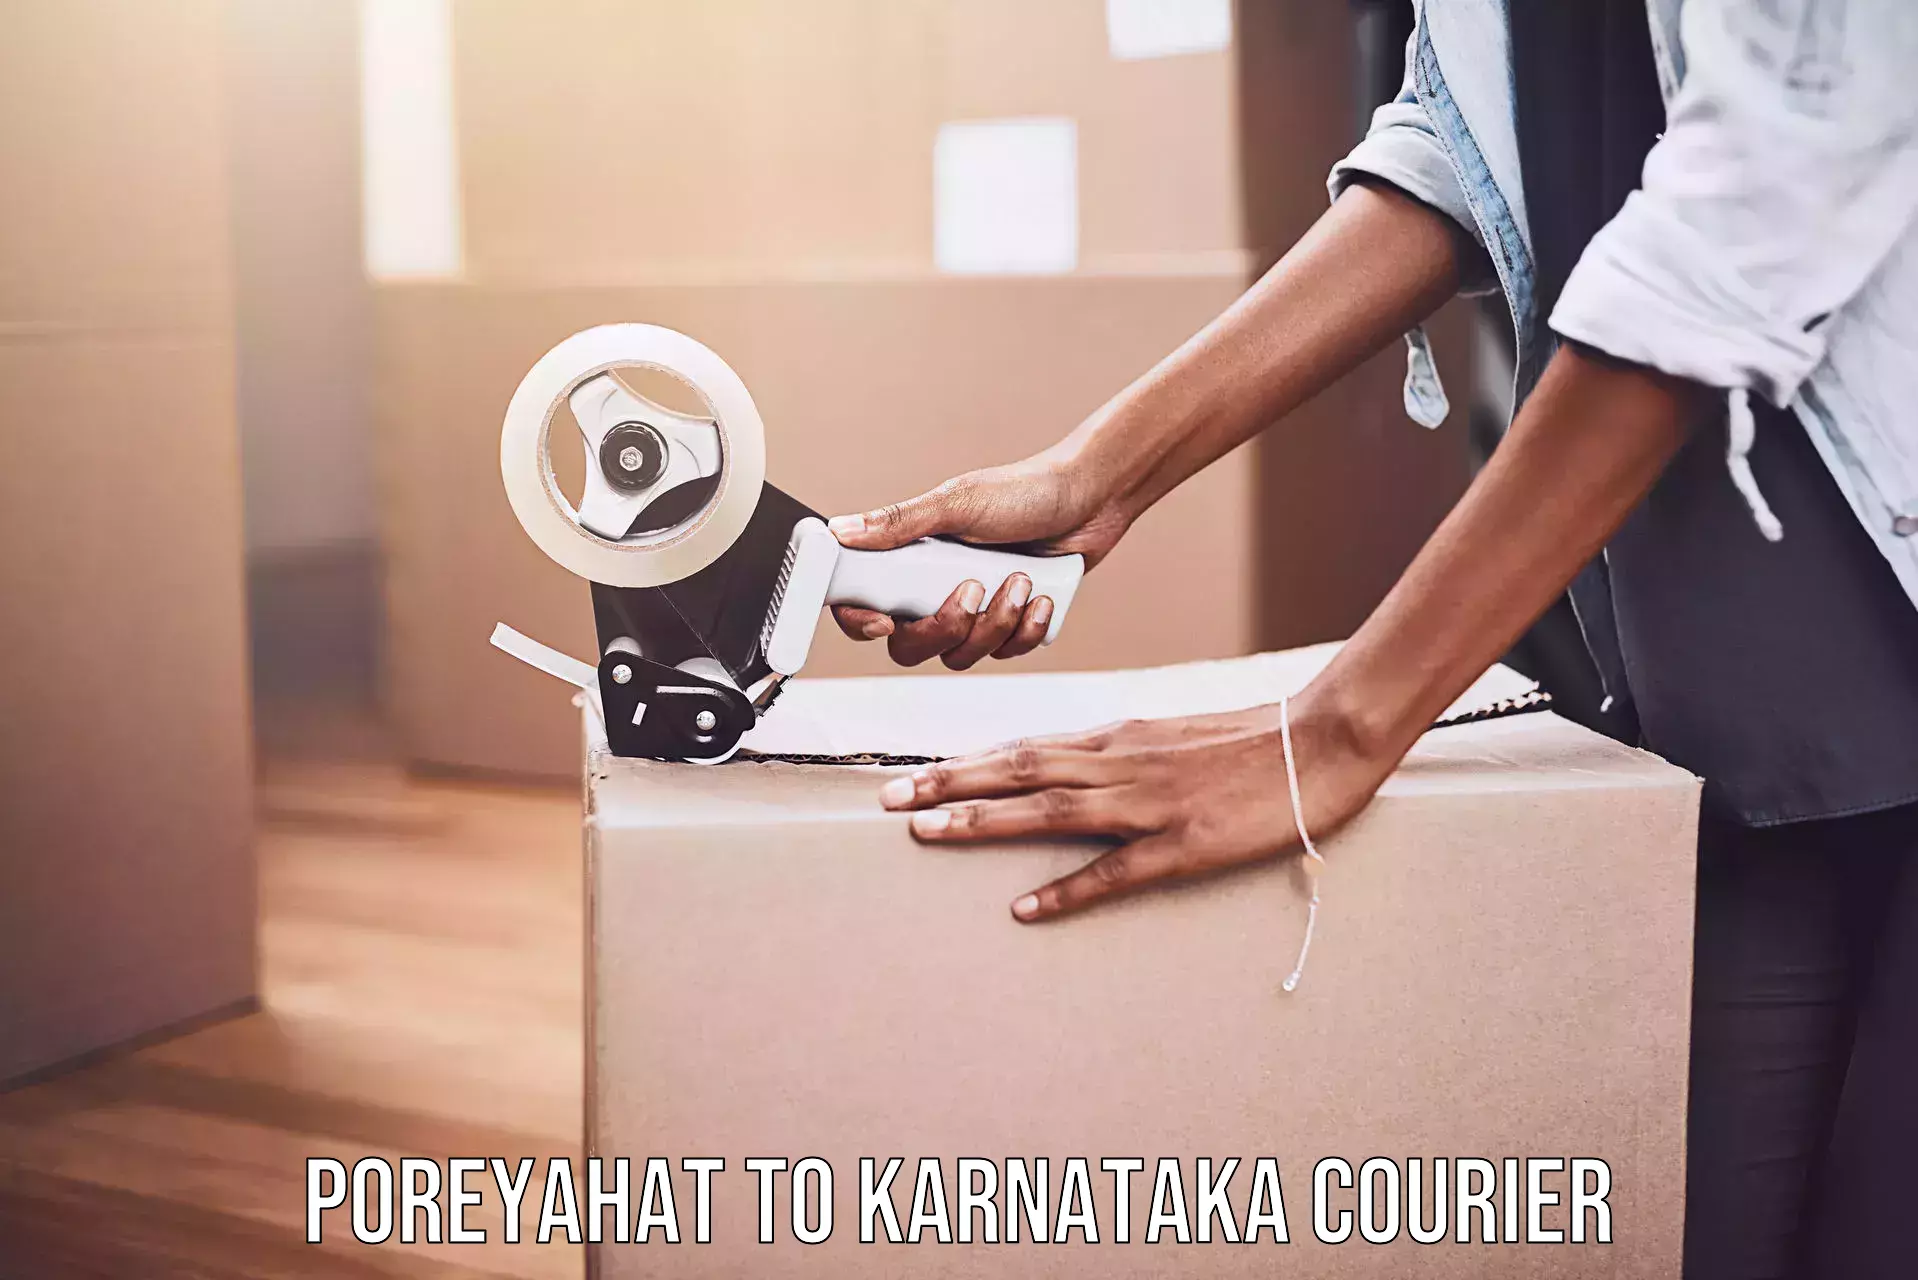 Express shipping in Poreyahat to Karnataka